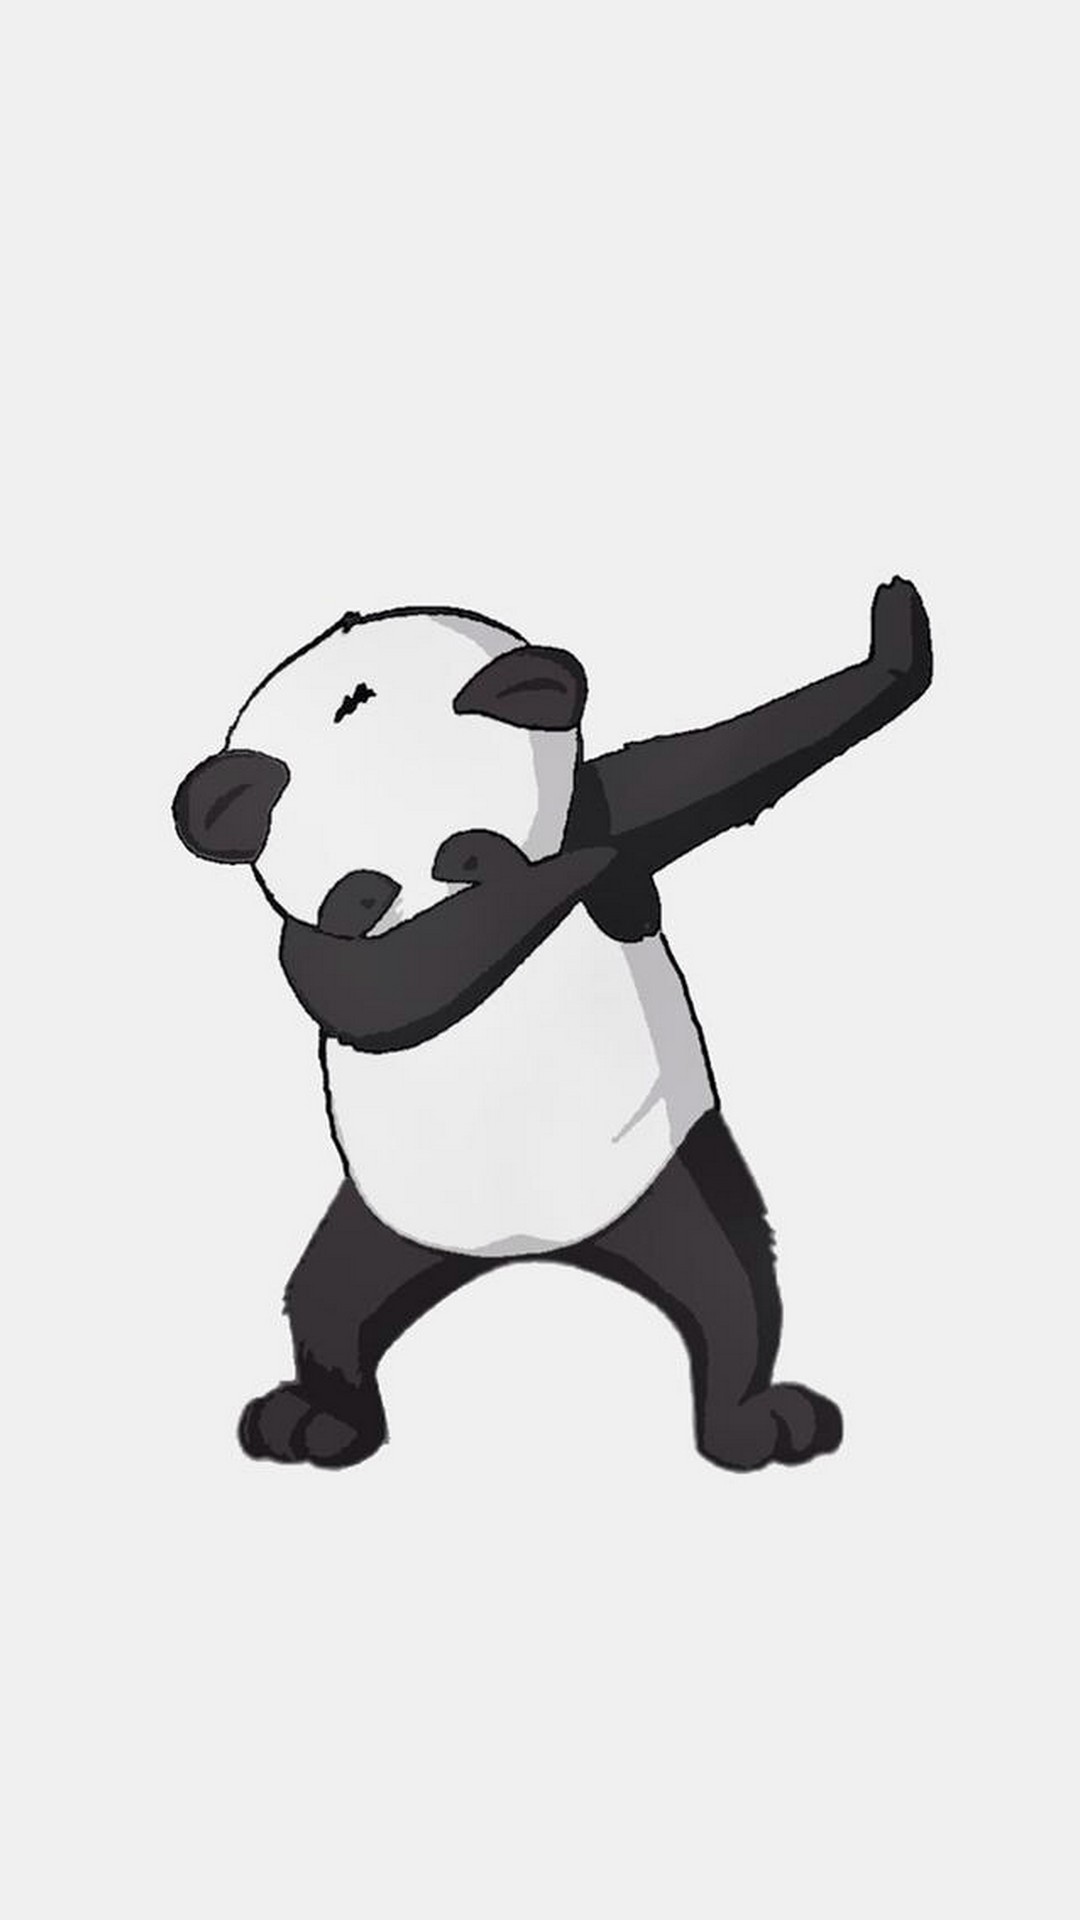 Cute Panda Dance Android Wallpaper 1080x1920